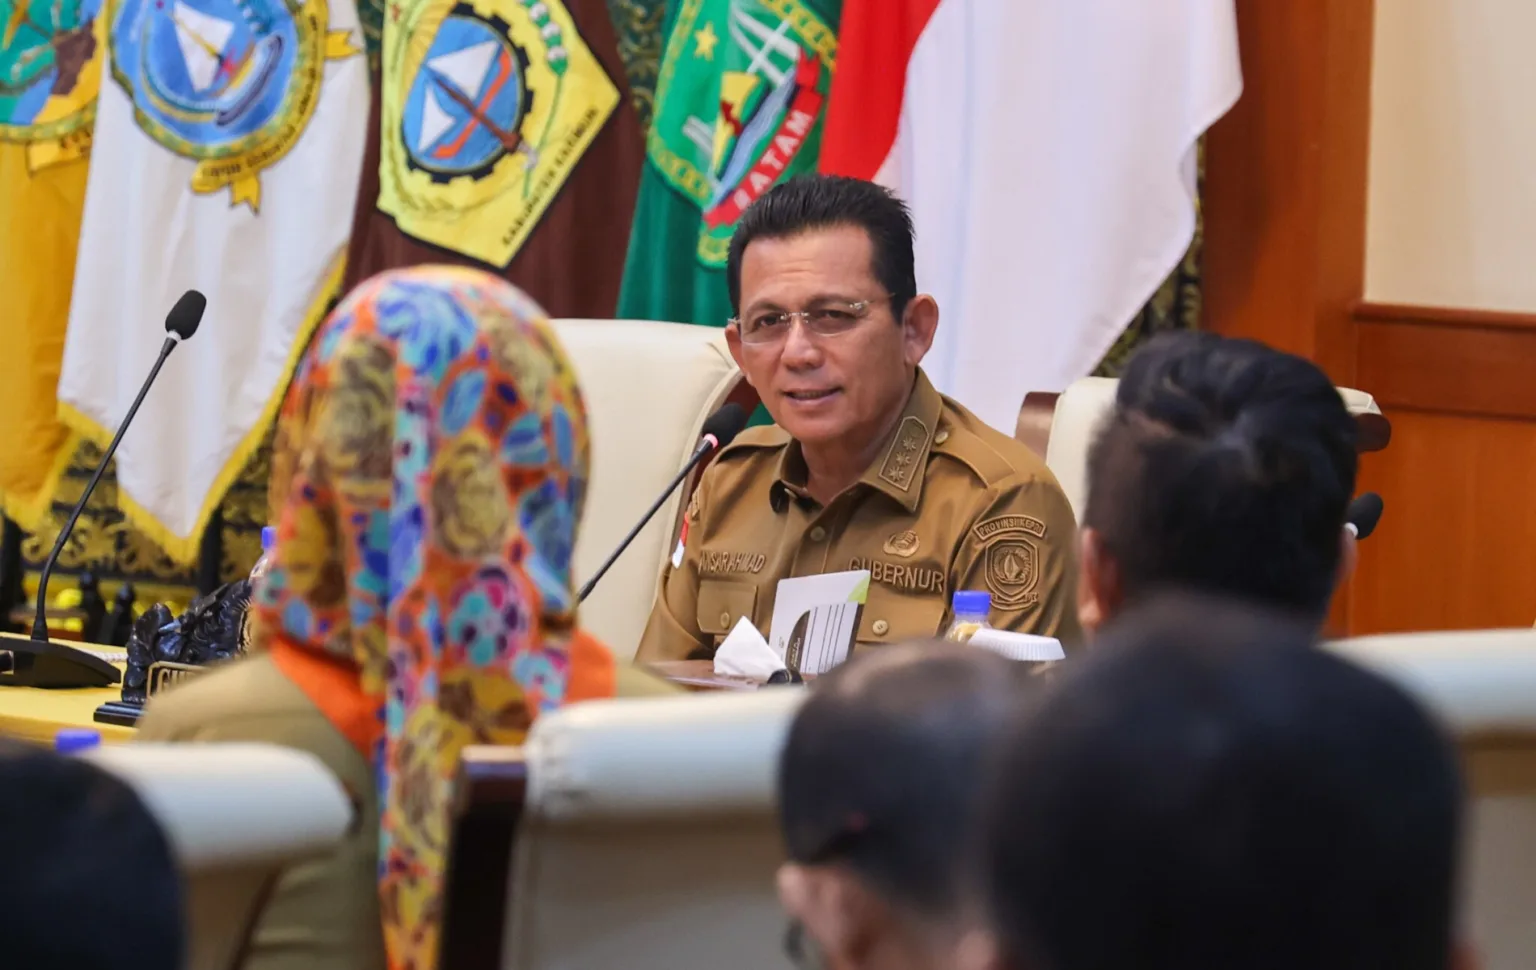 Gubernur Kepulauan Riau H. Ansar Ahmad Memimpin Rapat Evaluasi Pelaksanaan Kegiatan Pembangunan Di Lingkungan Pemerintah Provinsi Kepulauan Riau Di Gedung Daerah, Tanjungpinang, Senin (26 2)